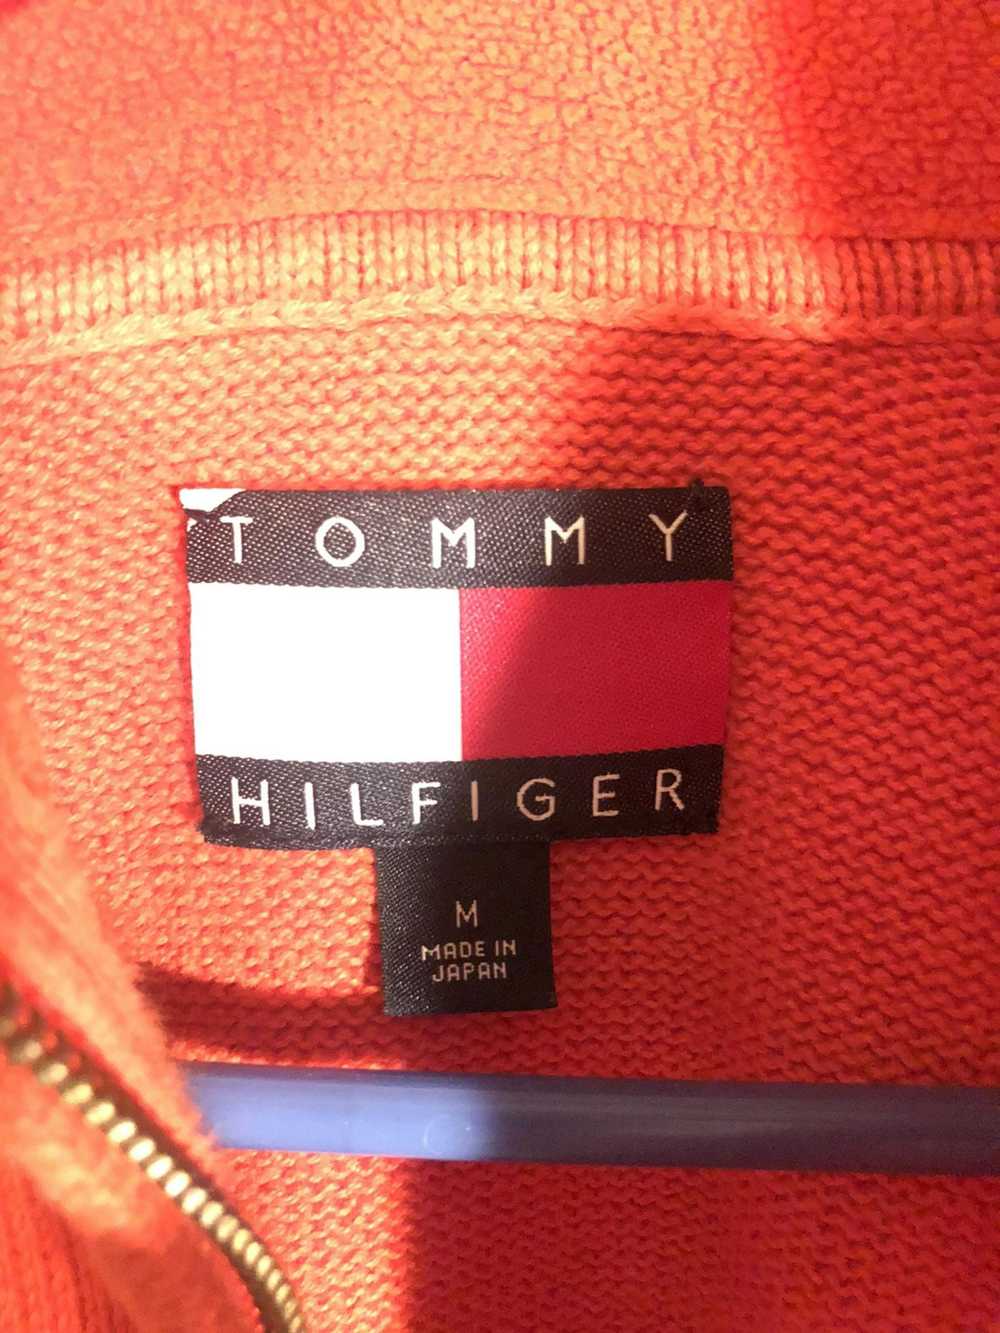 Tommy Hilfiger Vintage Tommy Hilfiger Quarter Zip - image 4